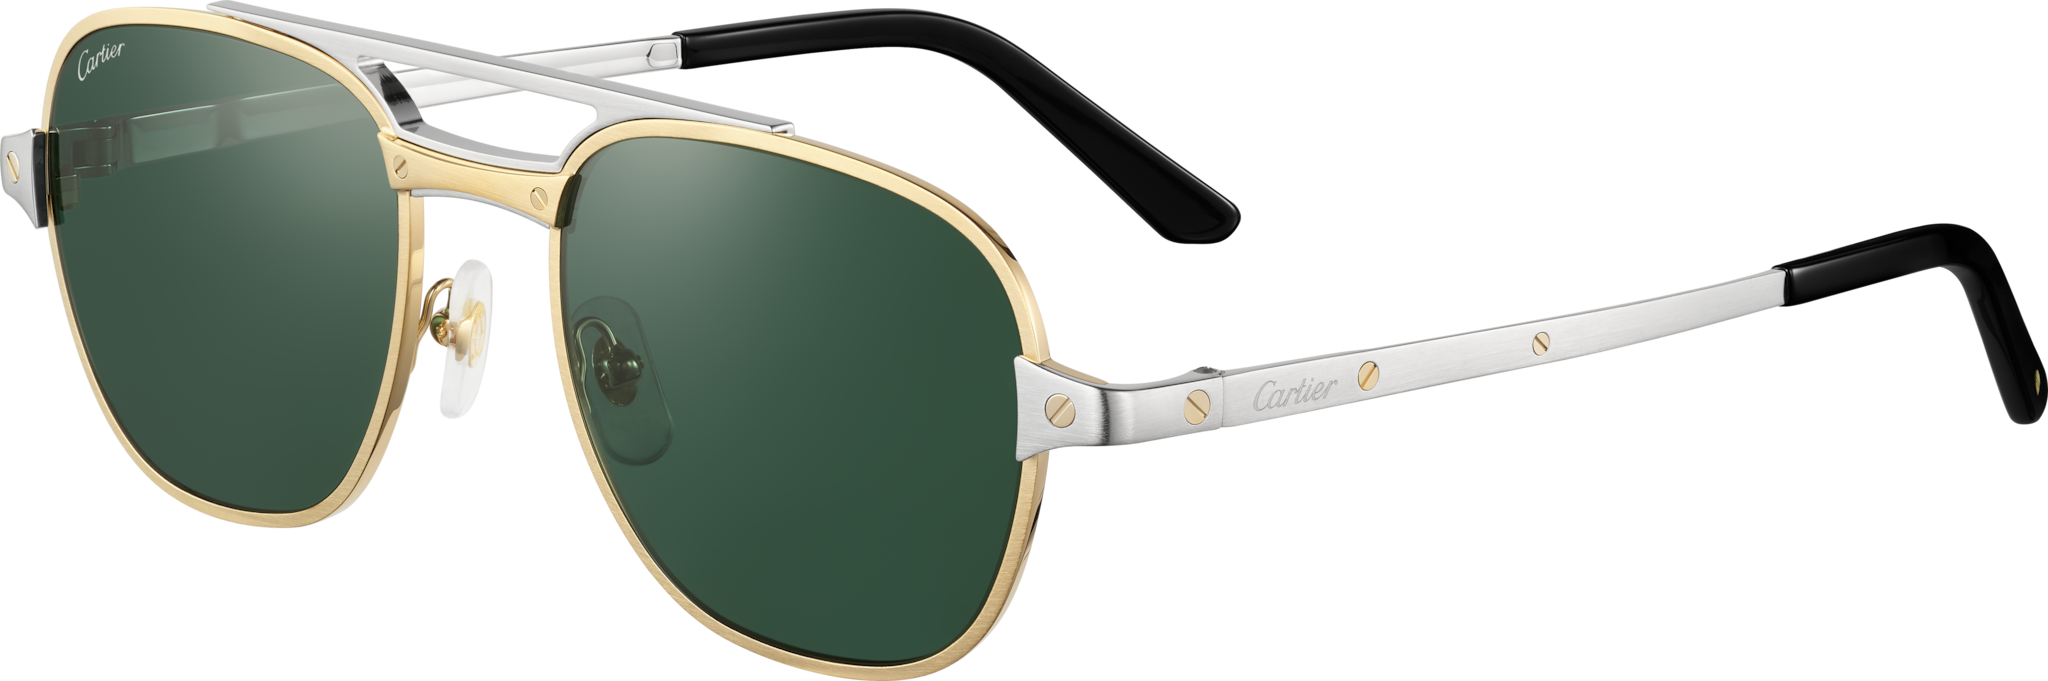 Gafas de sol Santos de CartierMetal acabado platino cepillado, lentes verdes